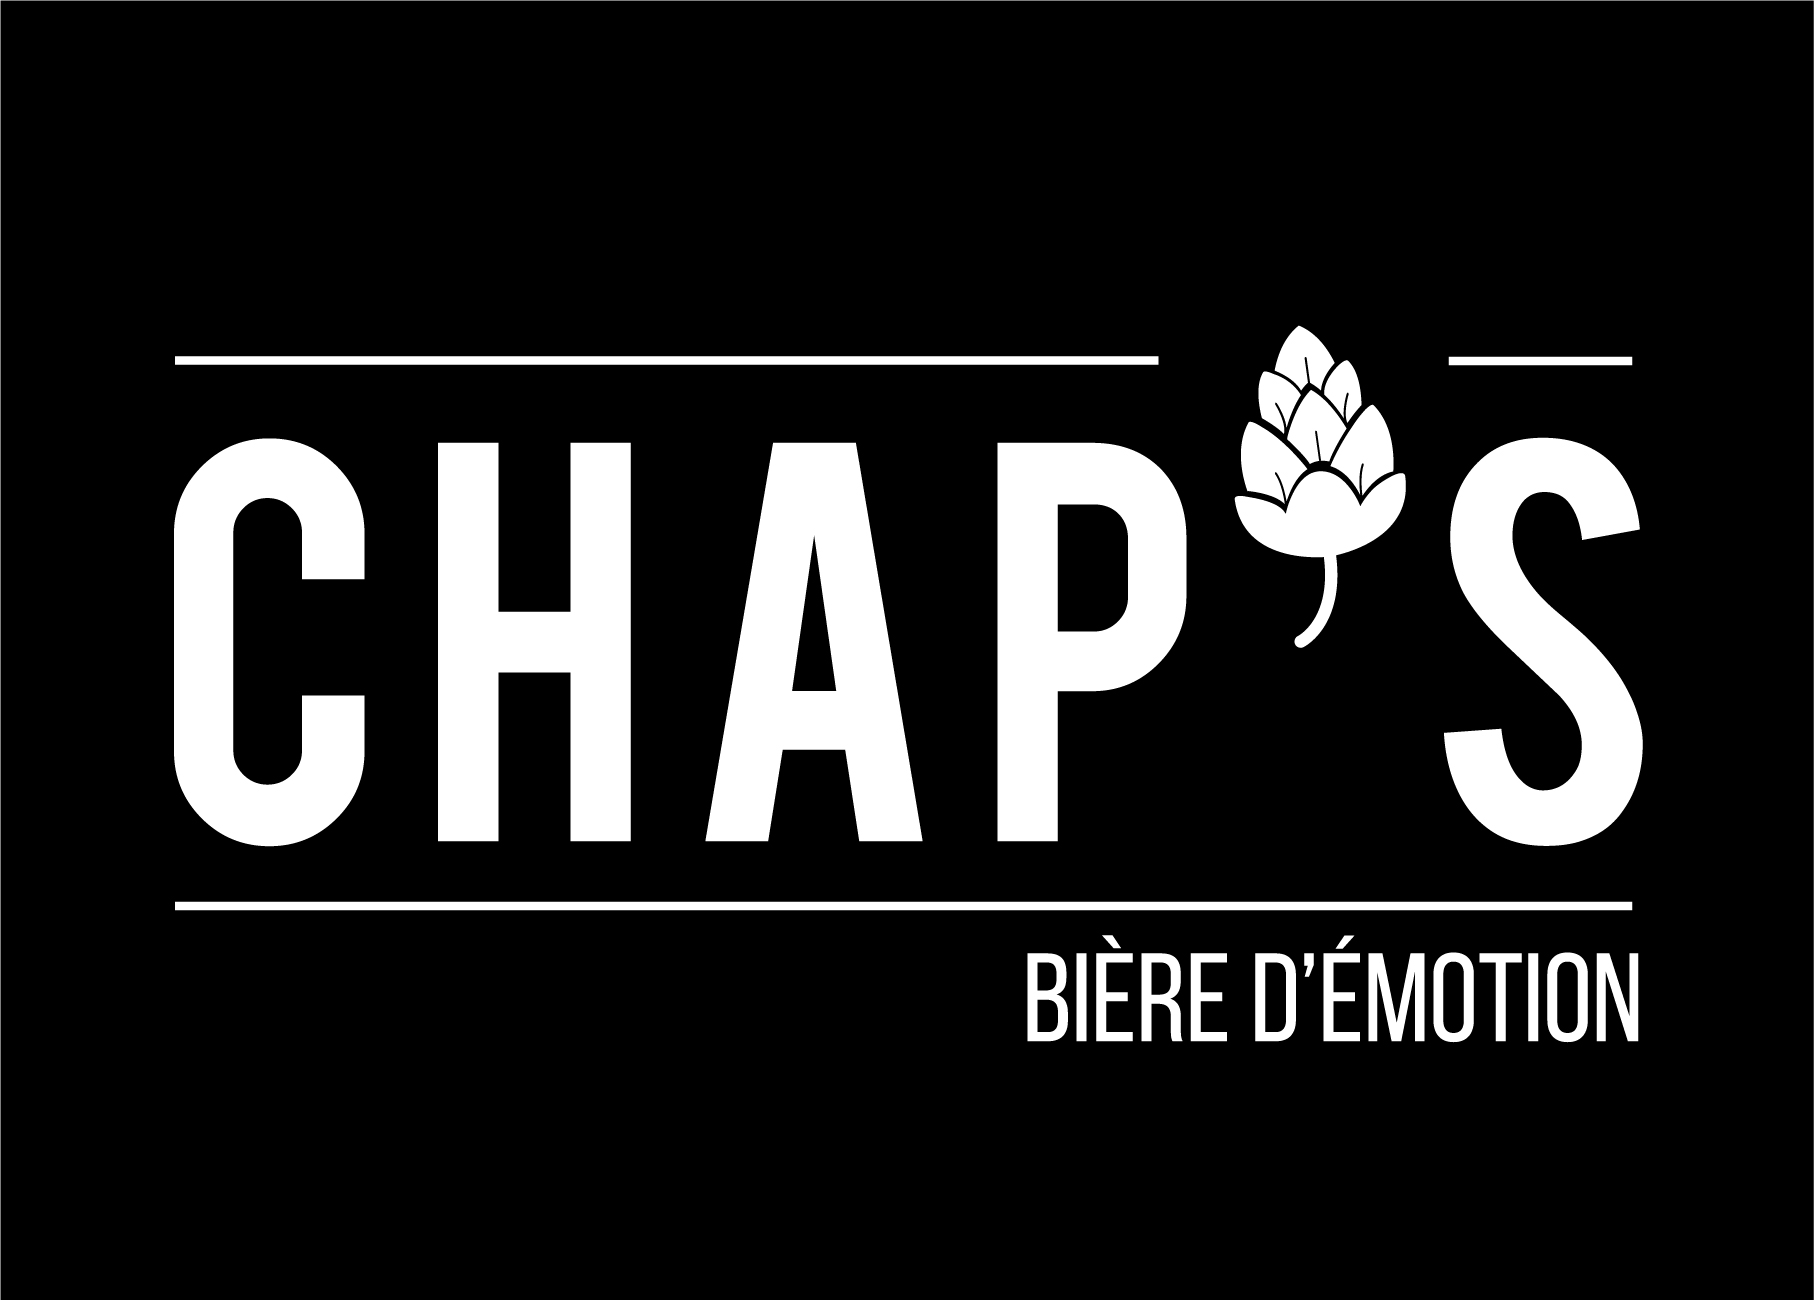 CHAP'S-AUTOUR DE LA BIERE